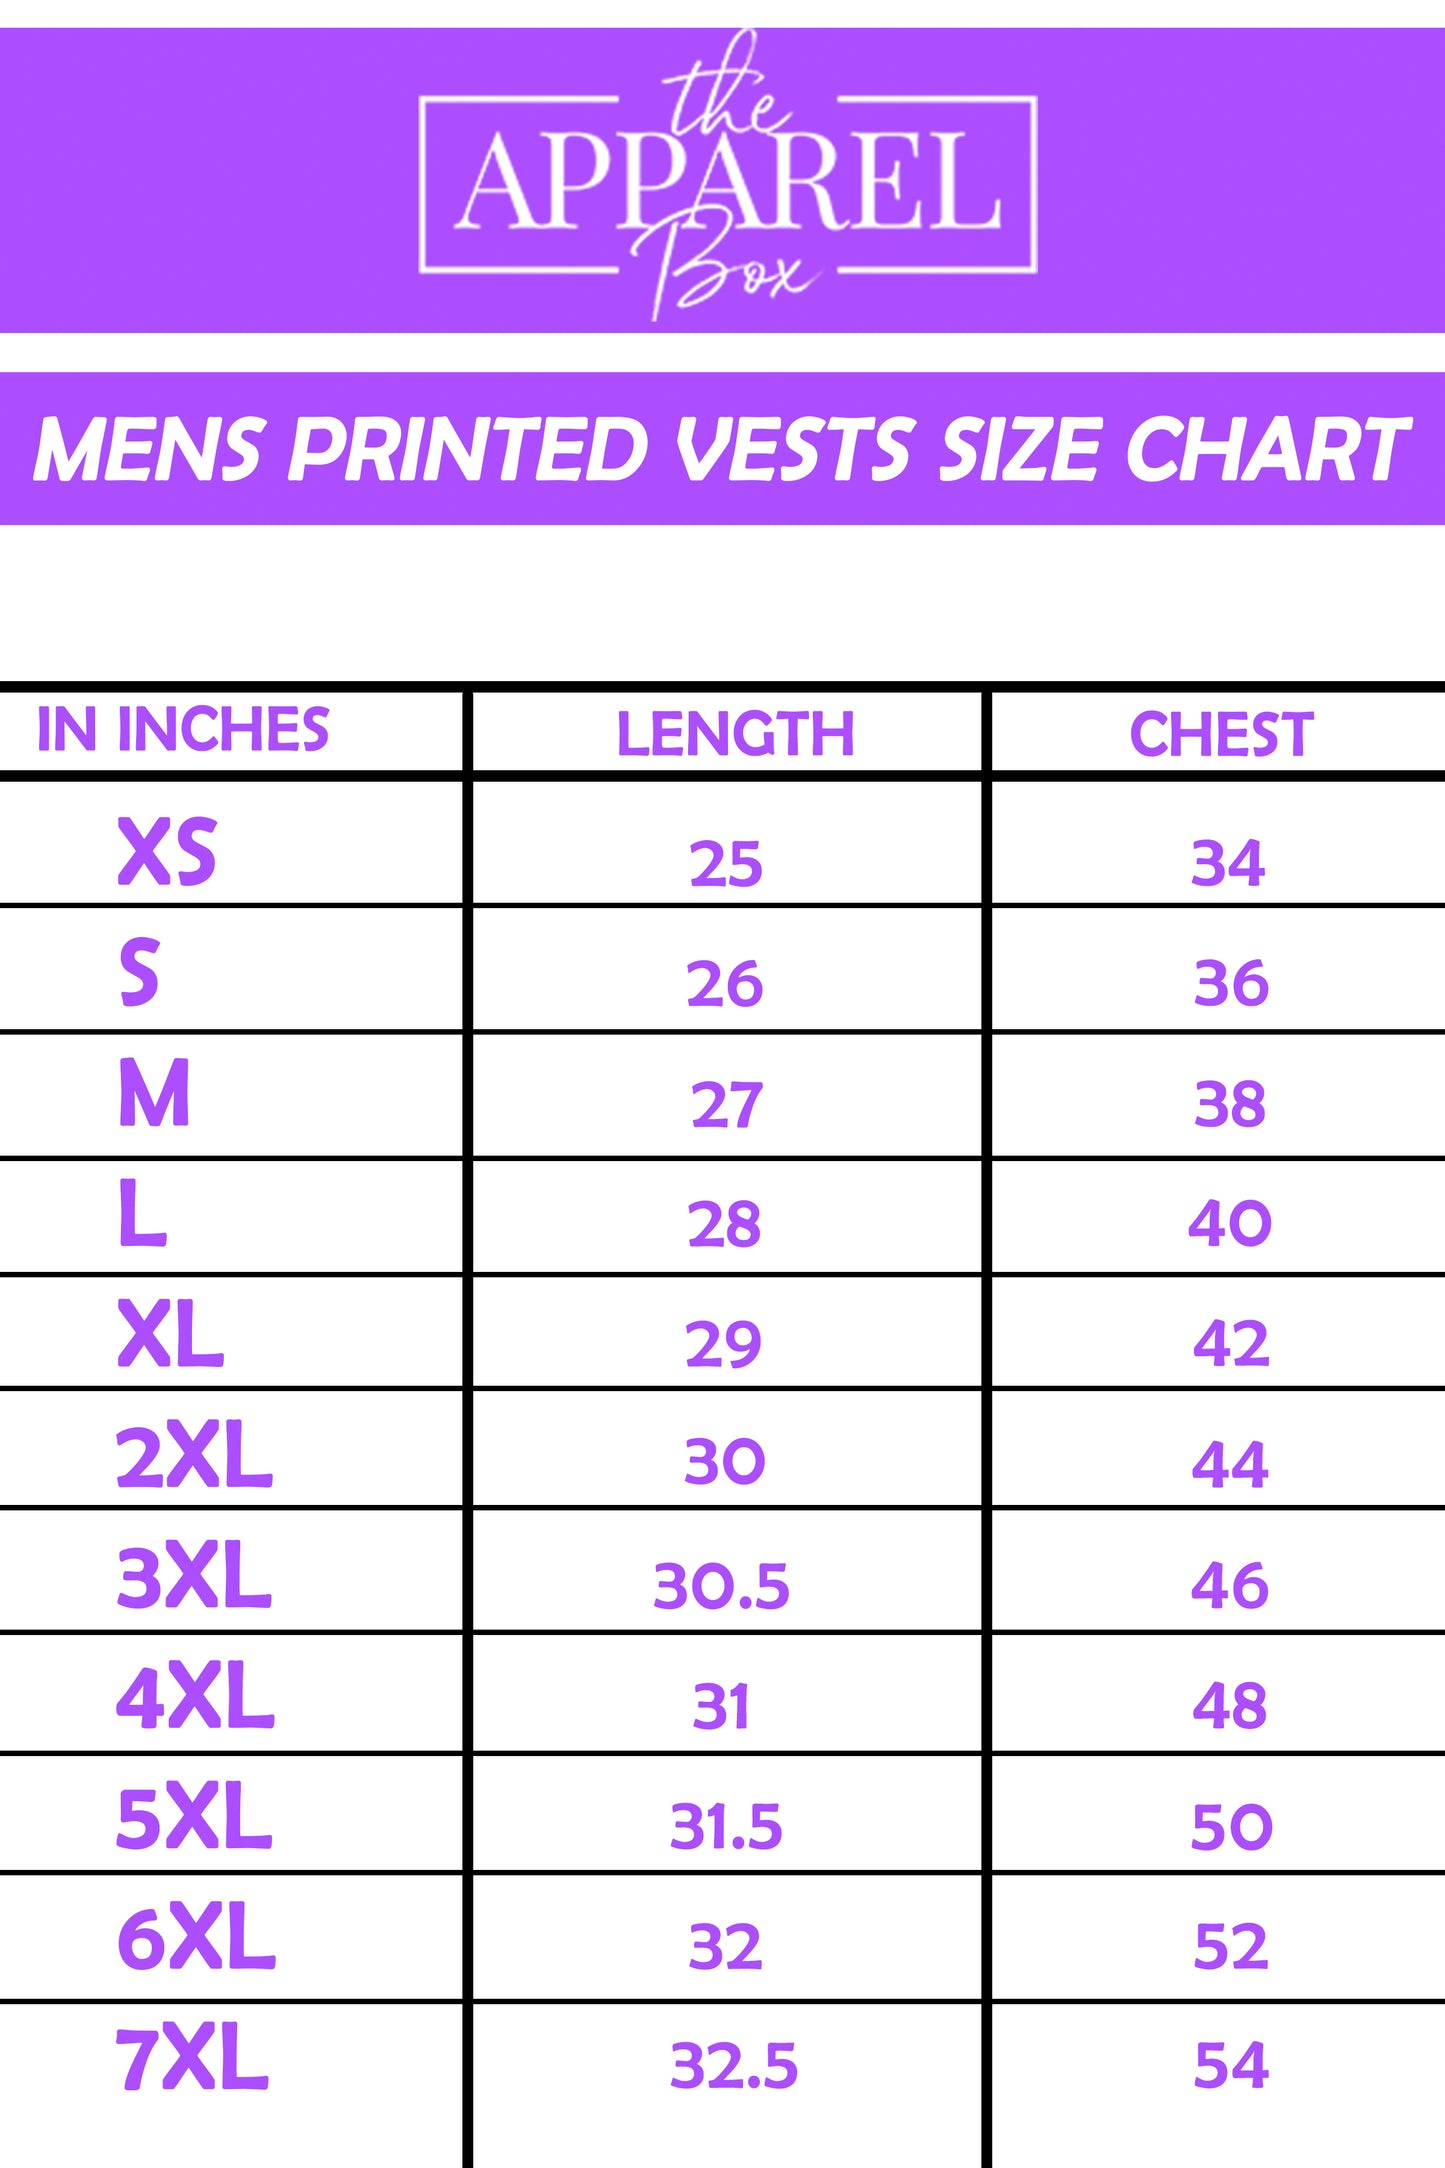 Printed Vest#2